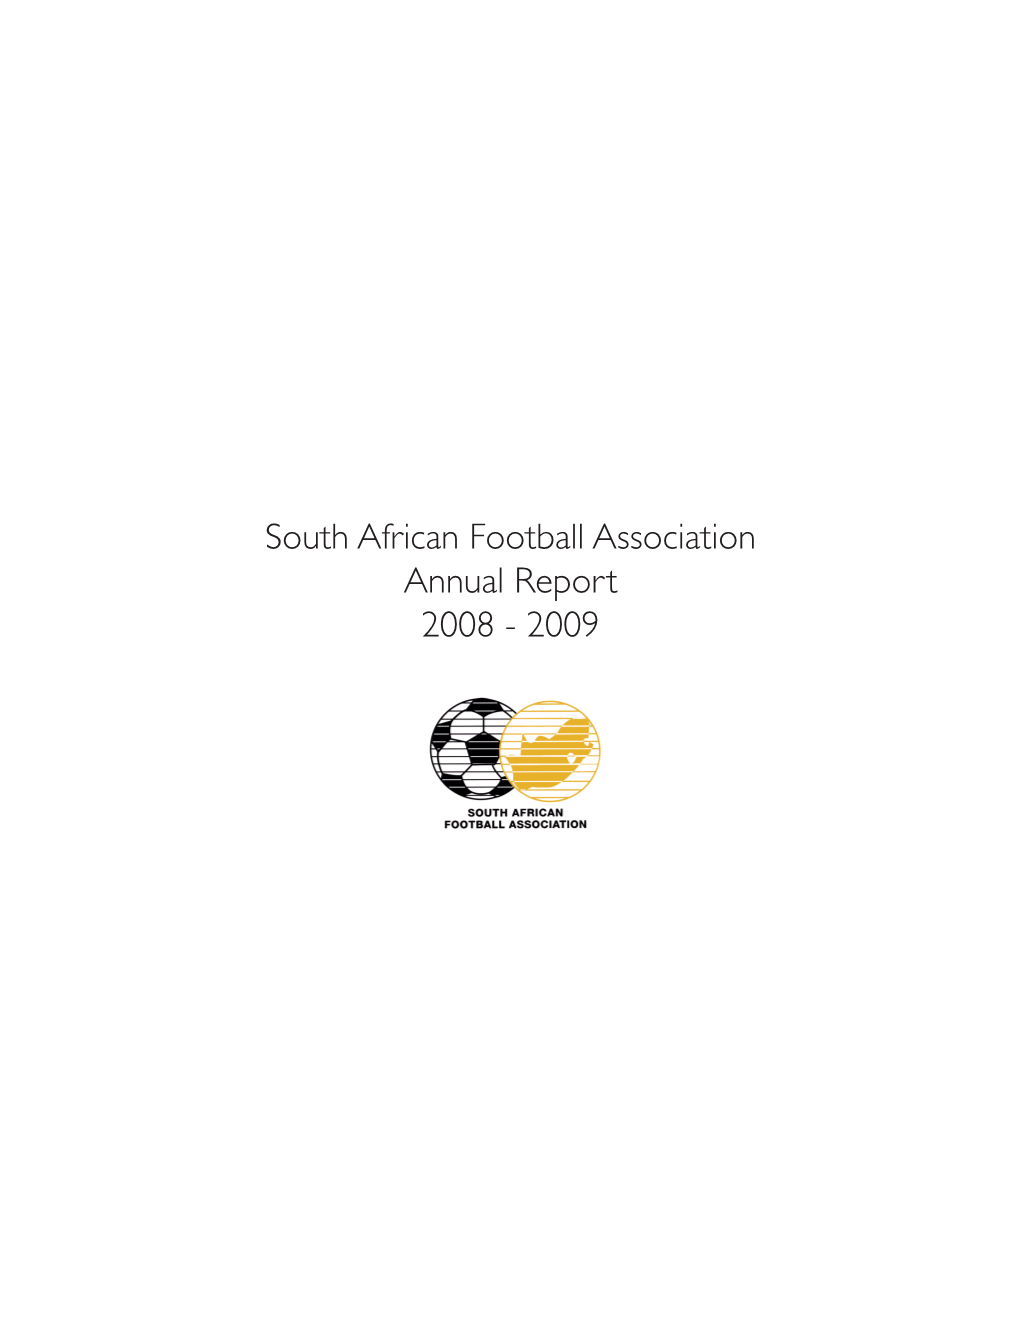 SAFA Annual Report 2008-2009.Pdf